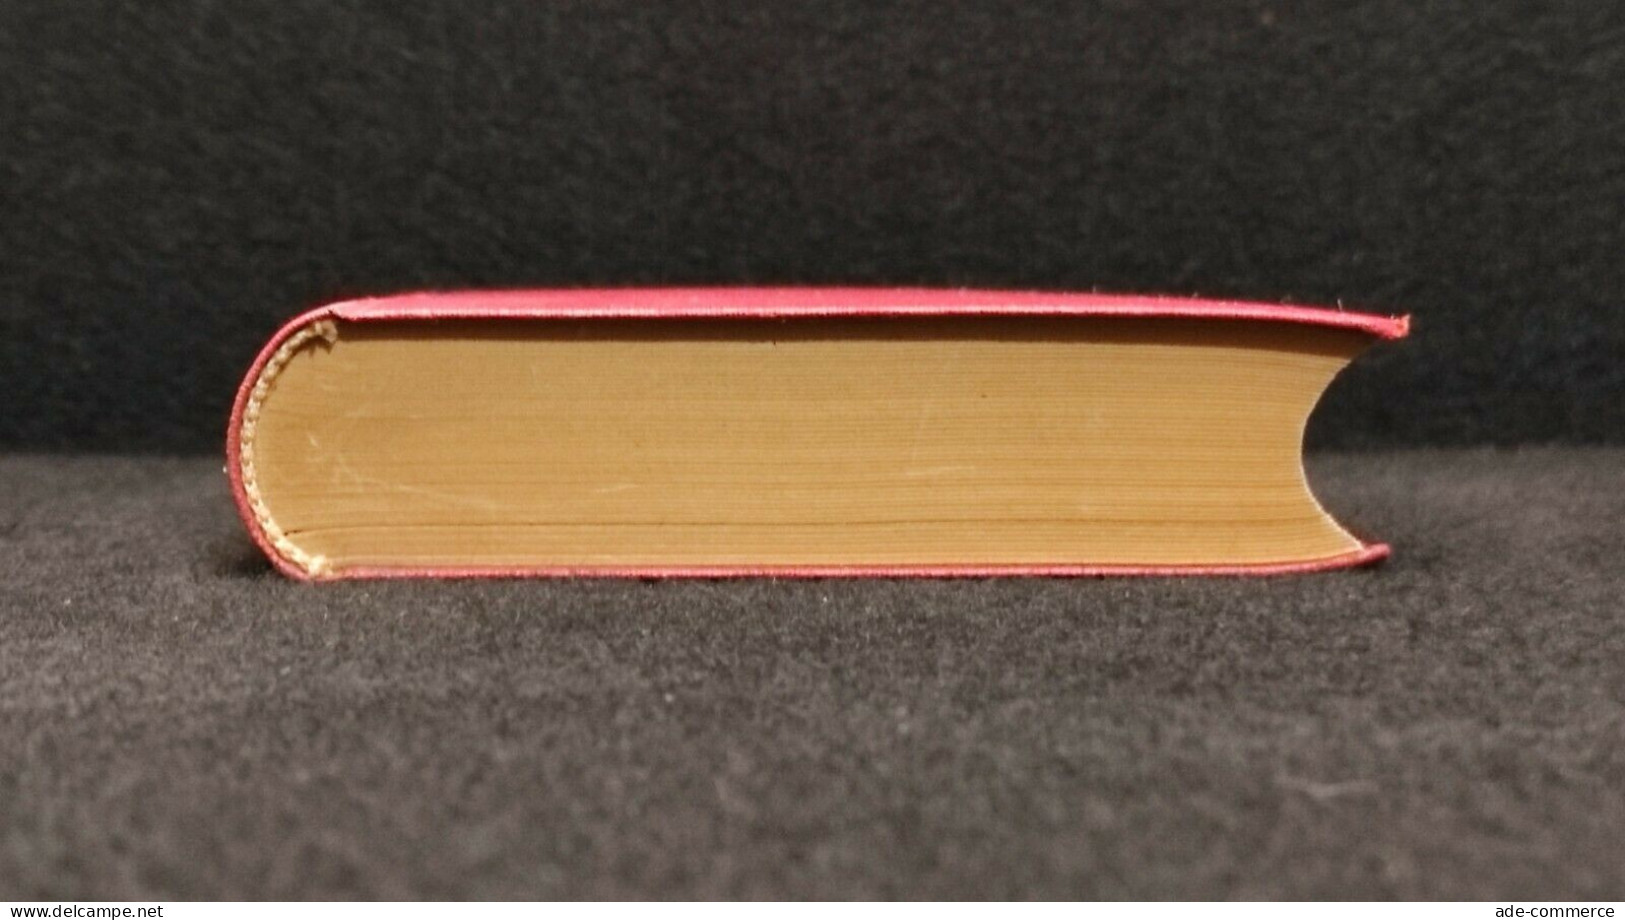 Manuale di Pandette -  Ferrini - Soc. Ed. Libraria - 1953 - Picc. Bibl. Scient.